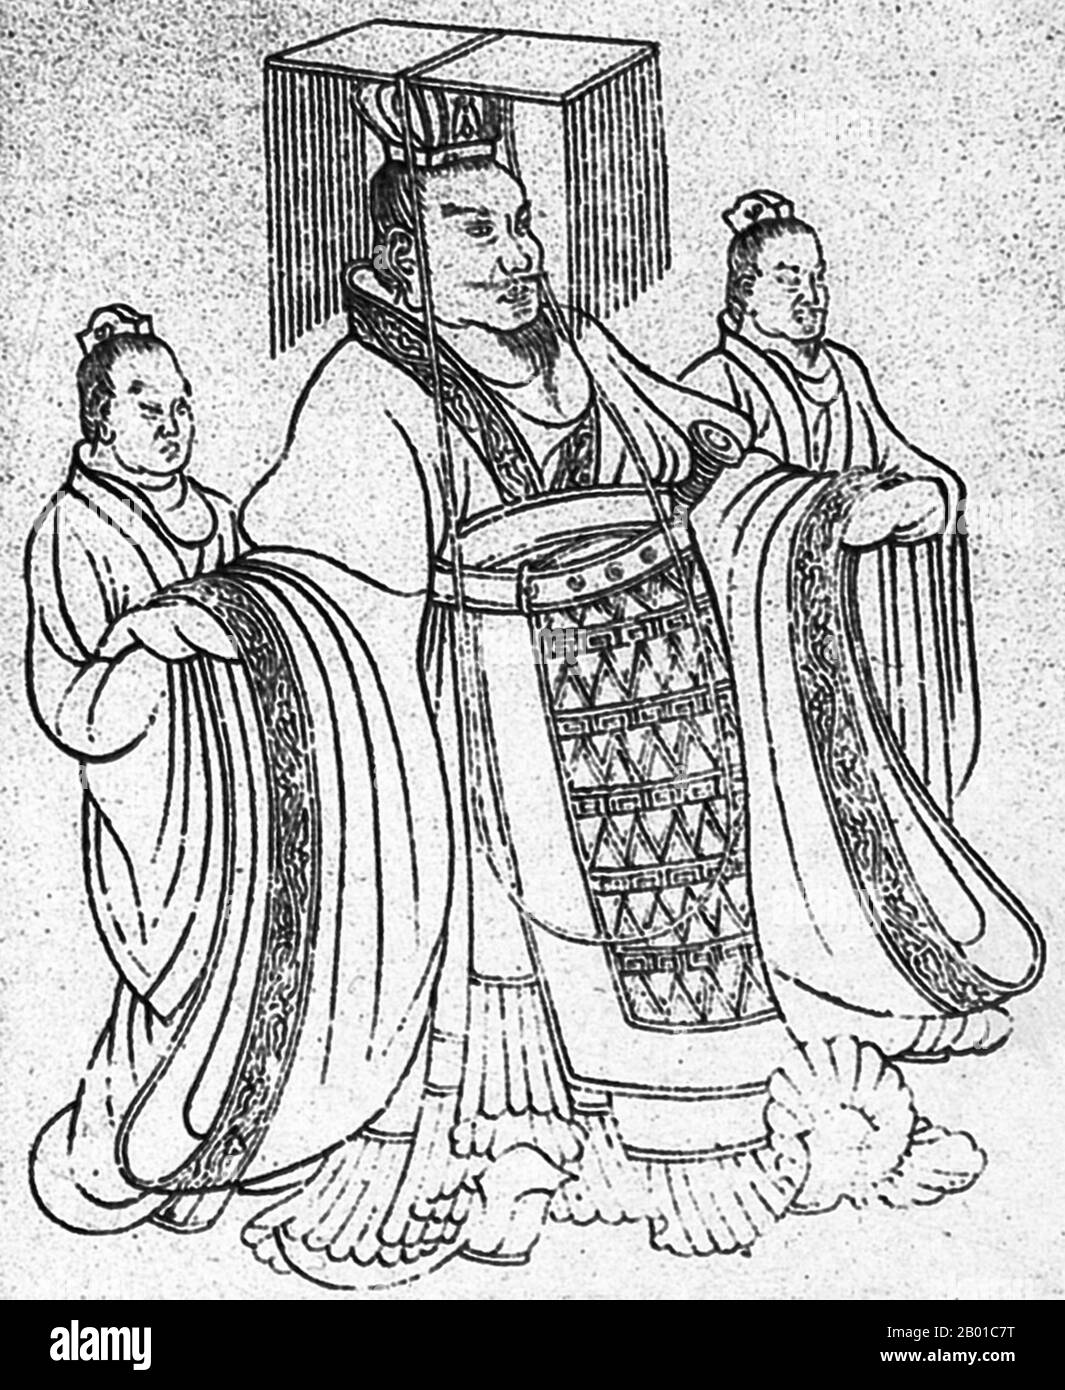 Cina: Imperatore Wu di Han (7 giugno 156 - 29 marzo 87 a.C.) con gli assistenti. Illustrazione, c. 1st ° secolo a.C. L'imperatore Wu di Han (pinyin: Hànwǔdì; Wade–Giles: WU ti), nome personale Liu che e nome di cortesia Tong, fu il settimo imperatore della dinastia Han della Cina, che regnò dal 141 al 87 a.C. L'imperatore Wu è meglio ricordato per la vasta espansione territoriale che si è verificata sotto il suo regno, così come lo stato confuciano forte e centralizzato che ha organizzato. È citato nella storia cinese come il più grande imperatore della dinastia Han e uno dei più grandi imperatori della storia cinese. Foto Stock